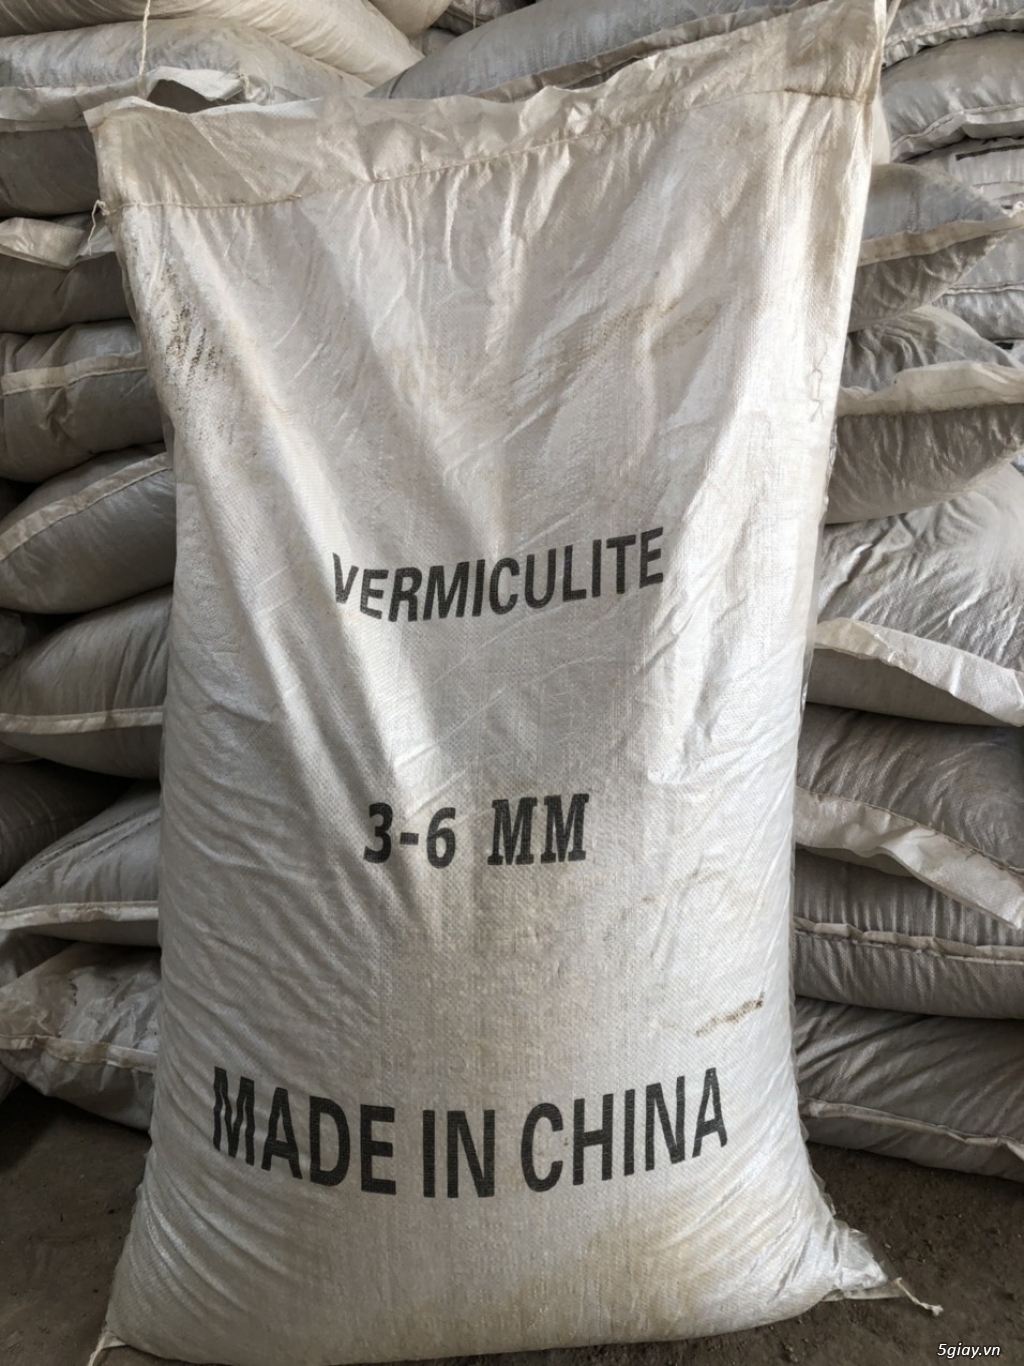 Cung cấp số lượng lớn Vermiculite làm vườn, xây dựng, công nghiệp - 7